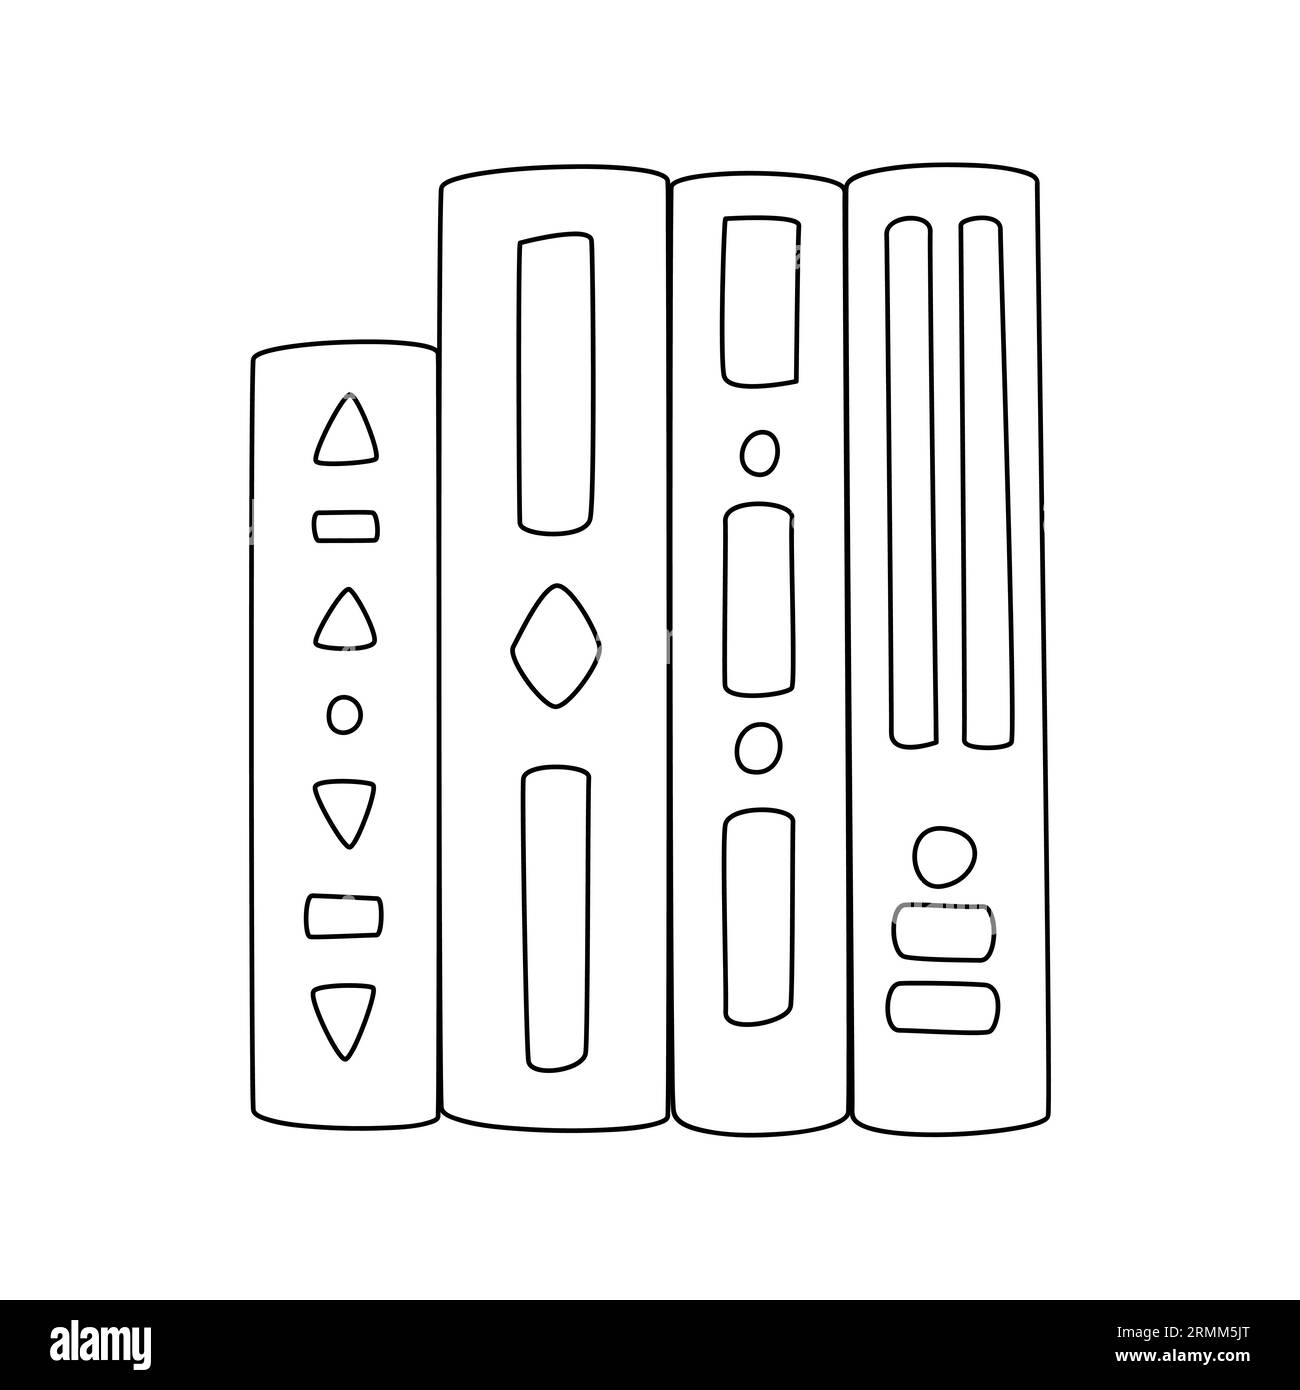 Hardcover-Bücher stehen in einer Reihe. Handgezeichnete Umrissbücher, Lehrbücher, Literatur. Symbol für Lernen, Bildung und Wissenschaft. Schwarz-weiß-Doodle ve Stock Vektor